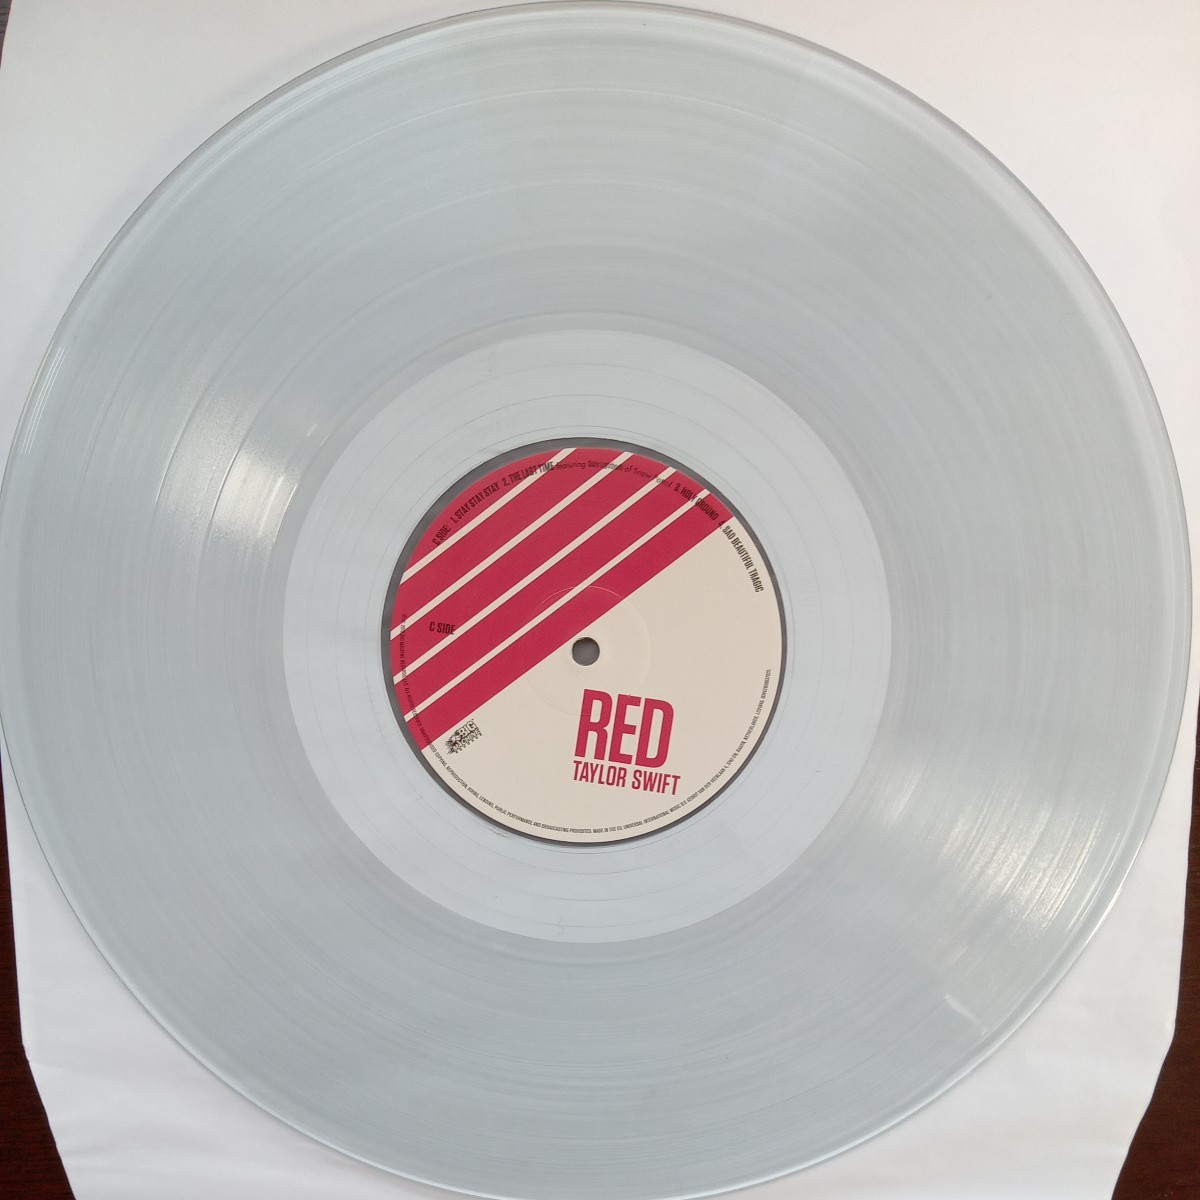 RSD limited taylor swift red テイラー・スウィフト record store day midnightはおまけです analog record vinyl レコード アナログ lp _画像8